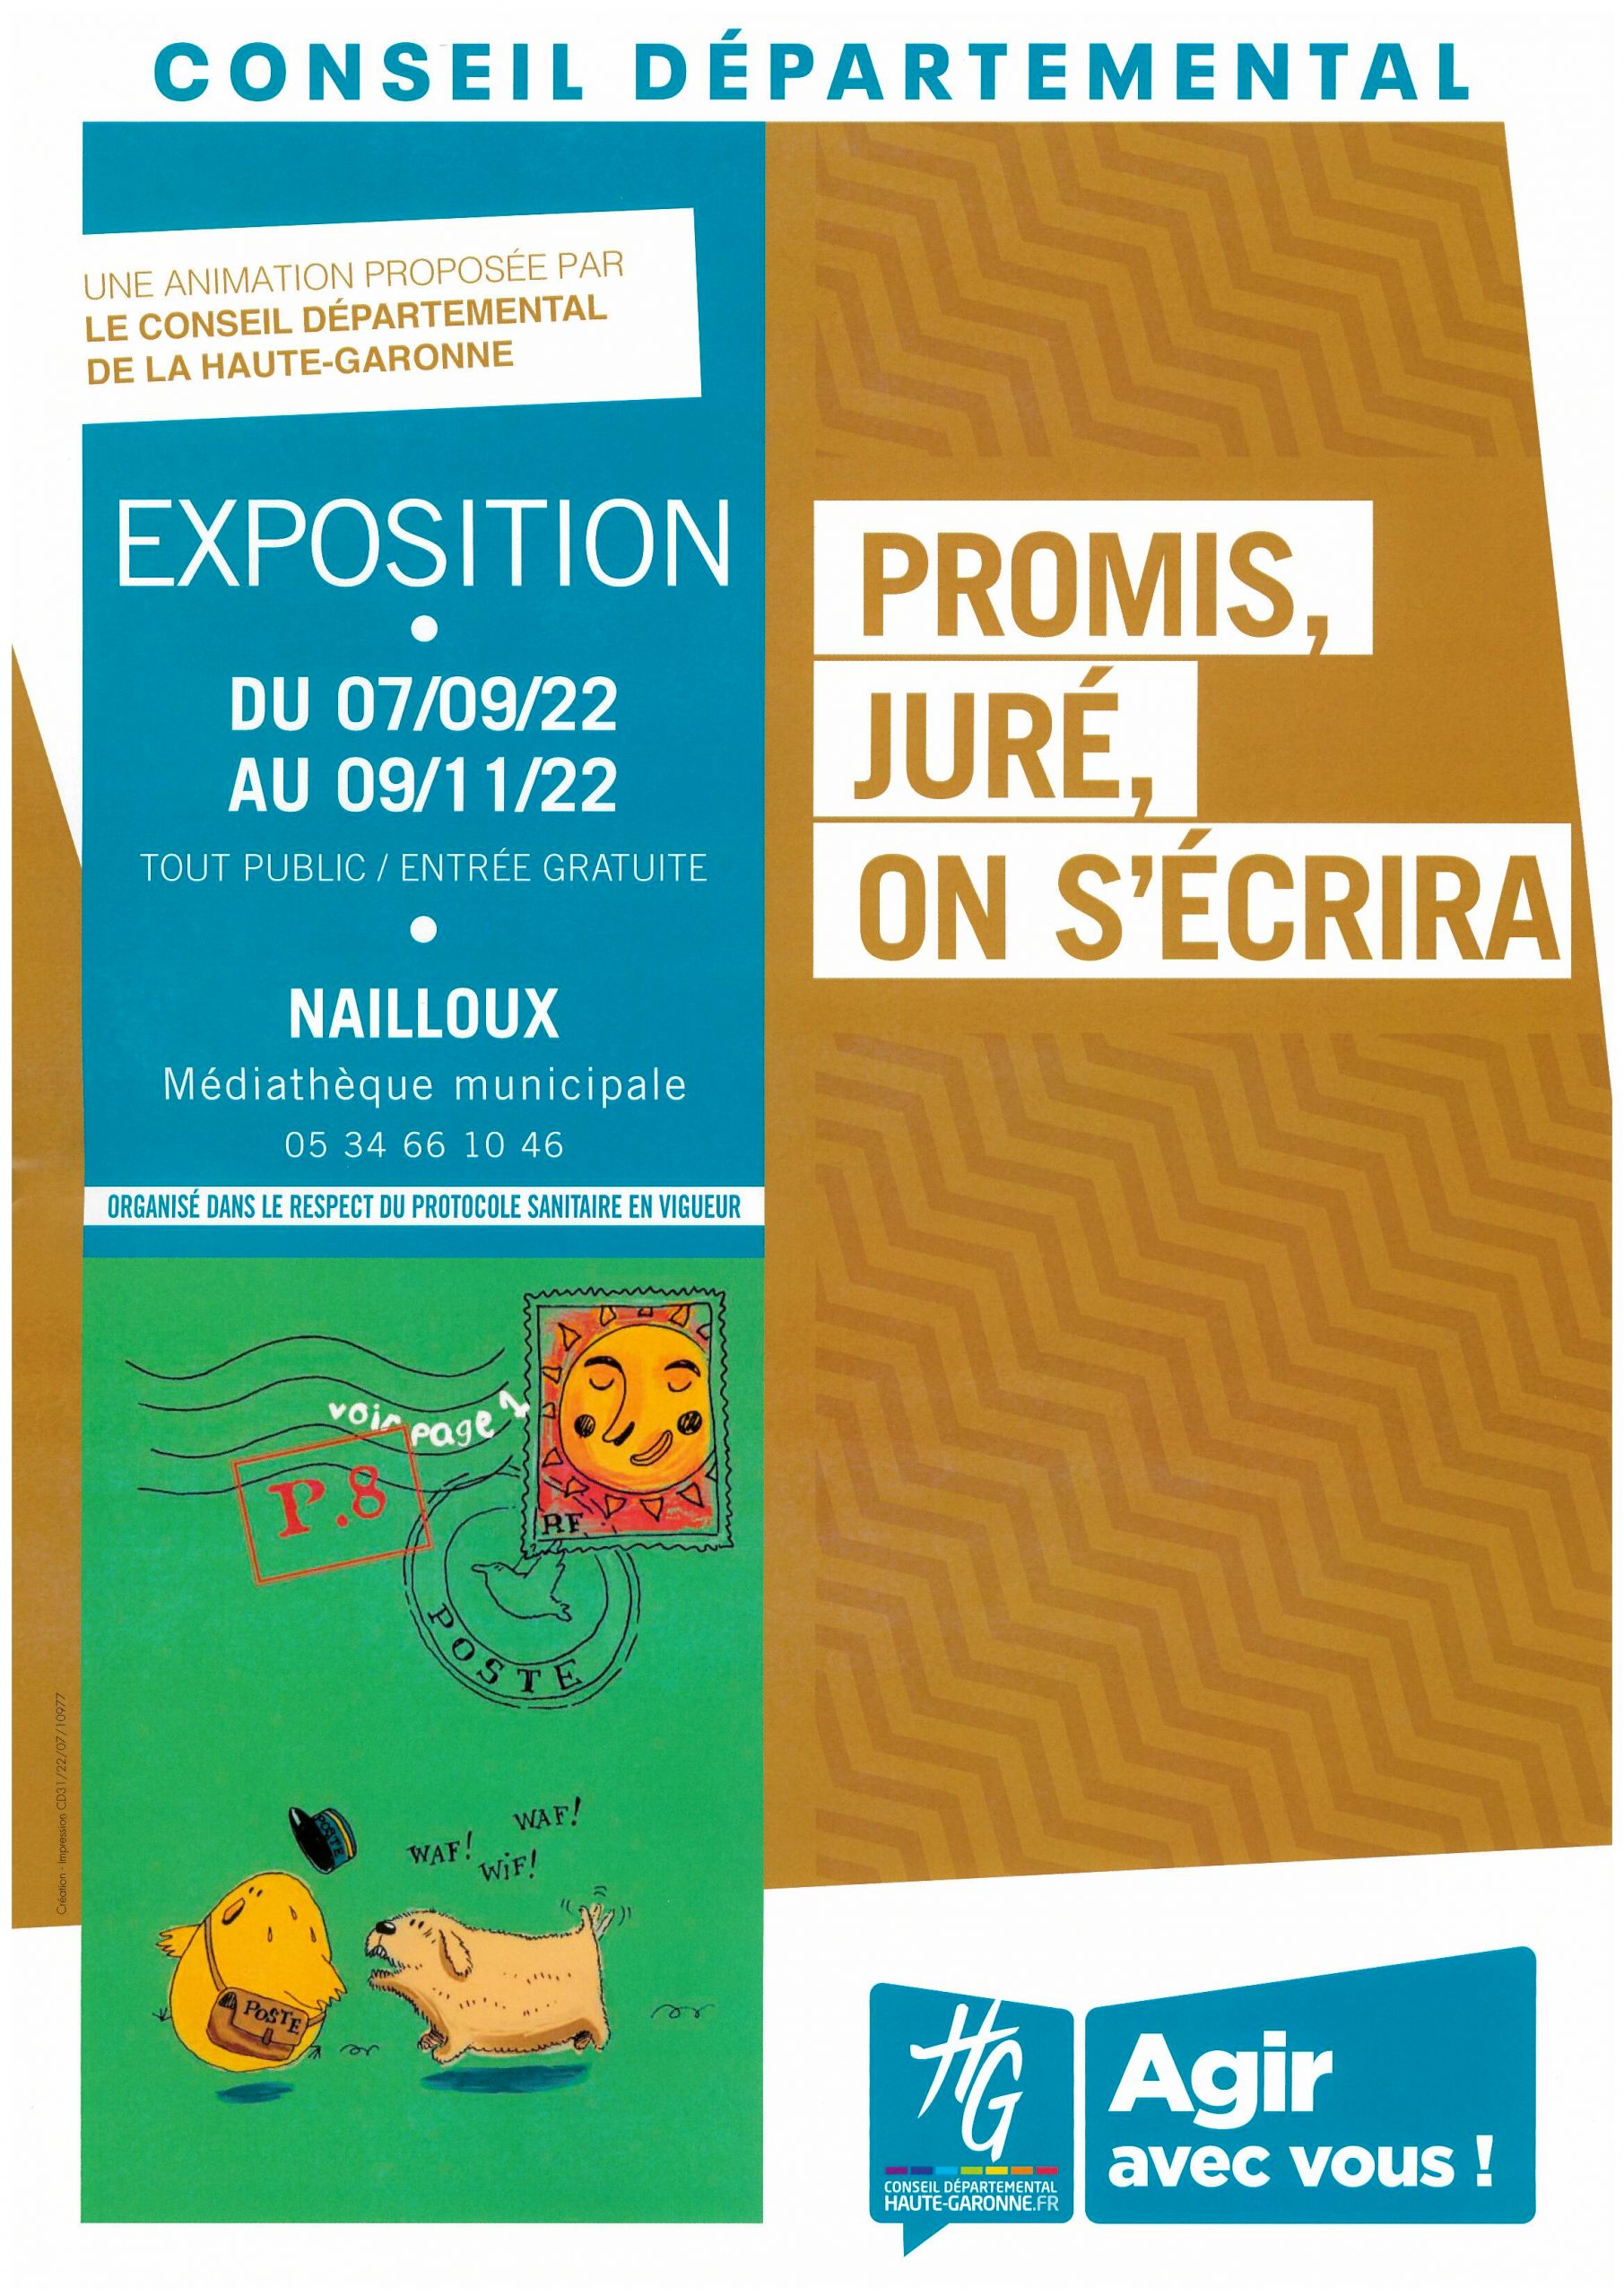 Exposition : "Promis juré, on s'écrira" par la Médiathèque Départementale de la Haute Garonne